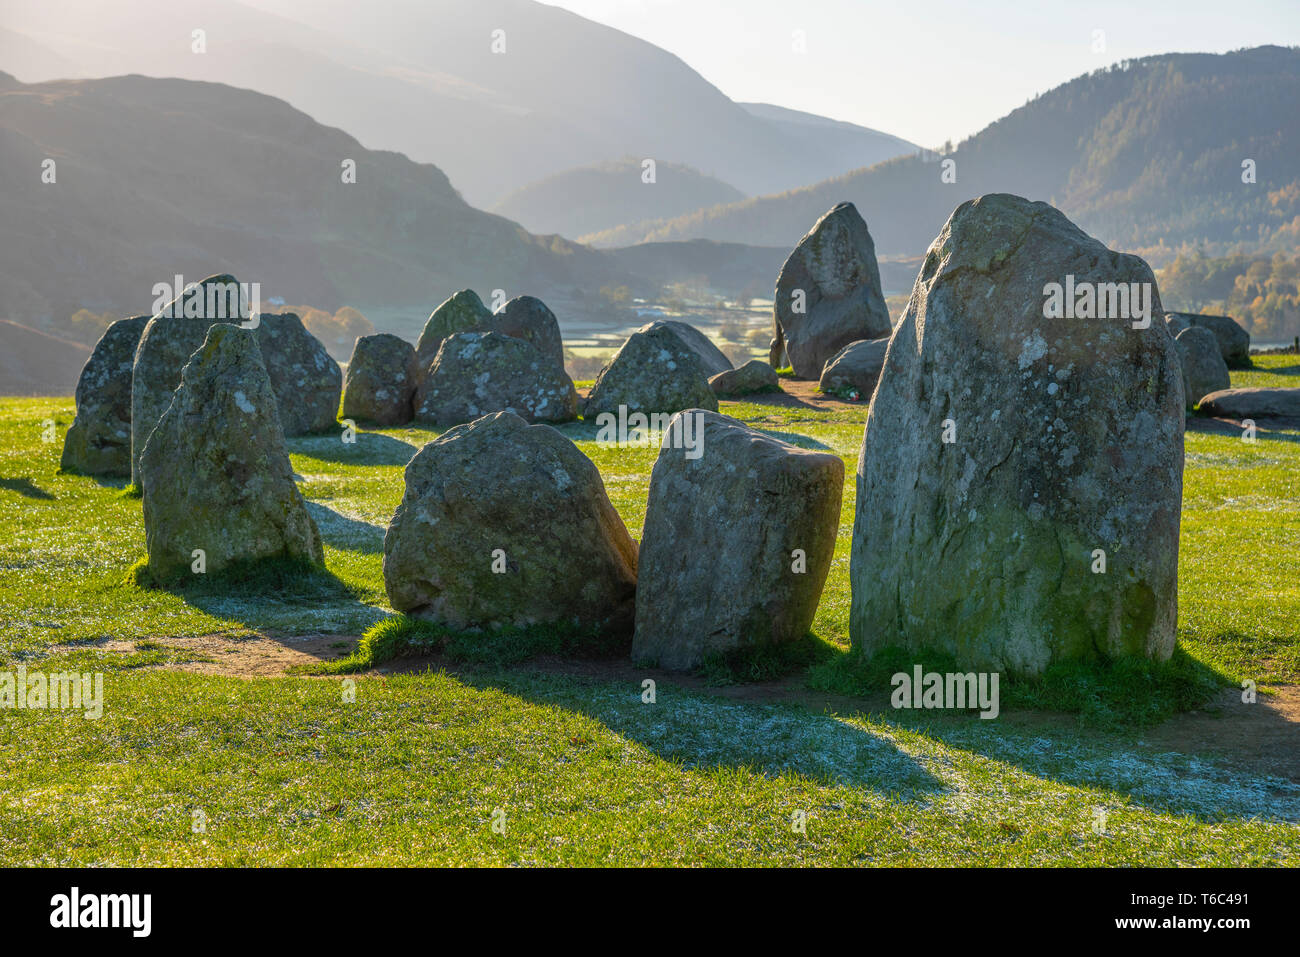 UK, Cumbria, Lake District, cercle de pierres de Castlerigg Banque D'Images